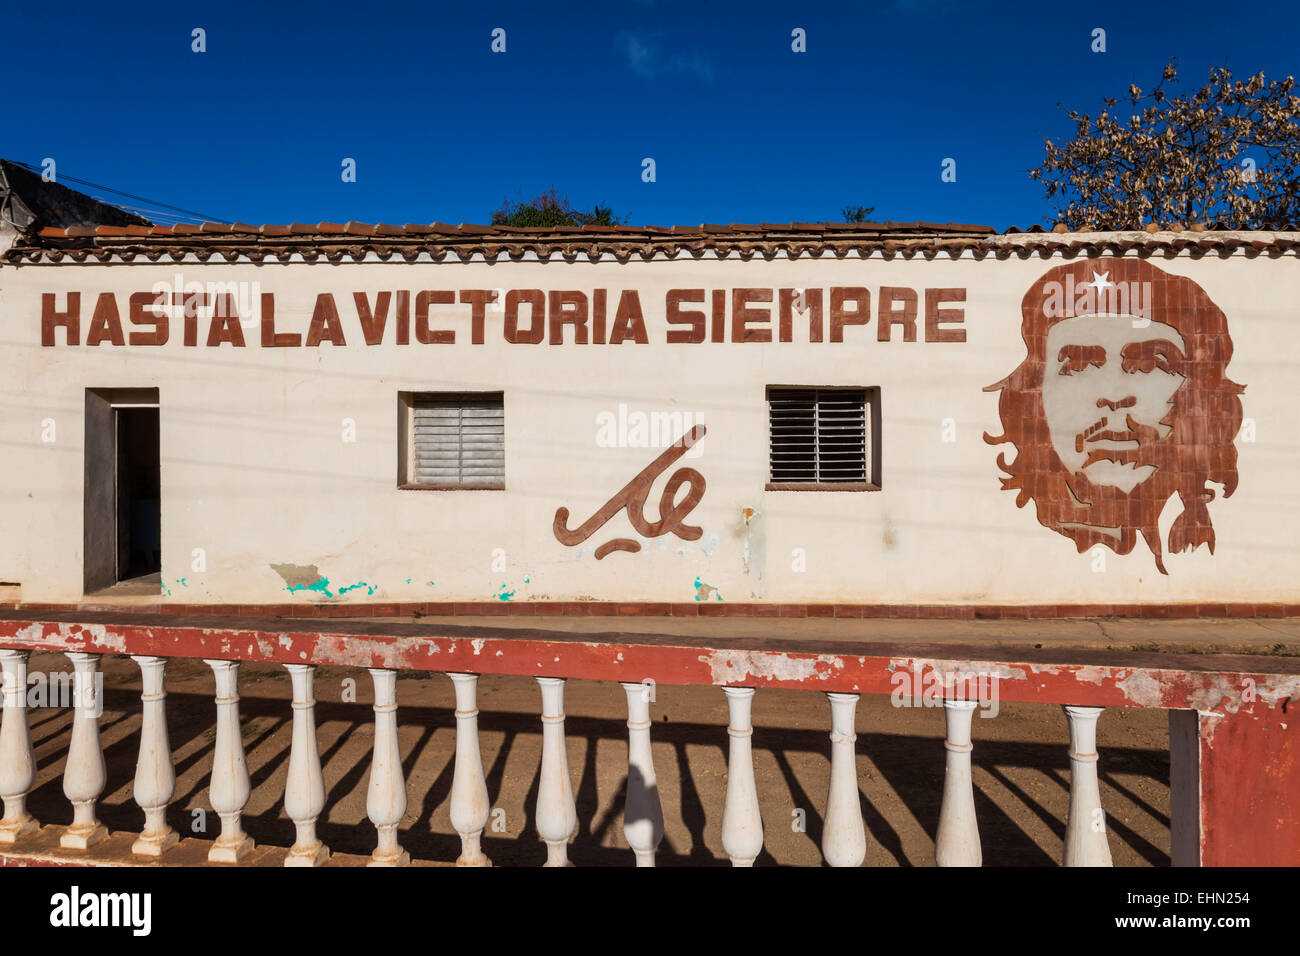 Portrait of Ernesto Che Guevara, Cuba. Stock Photo